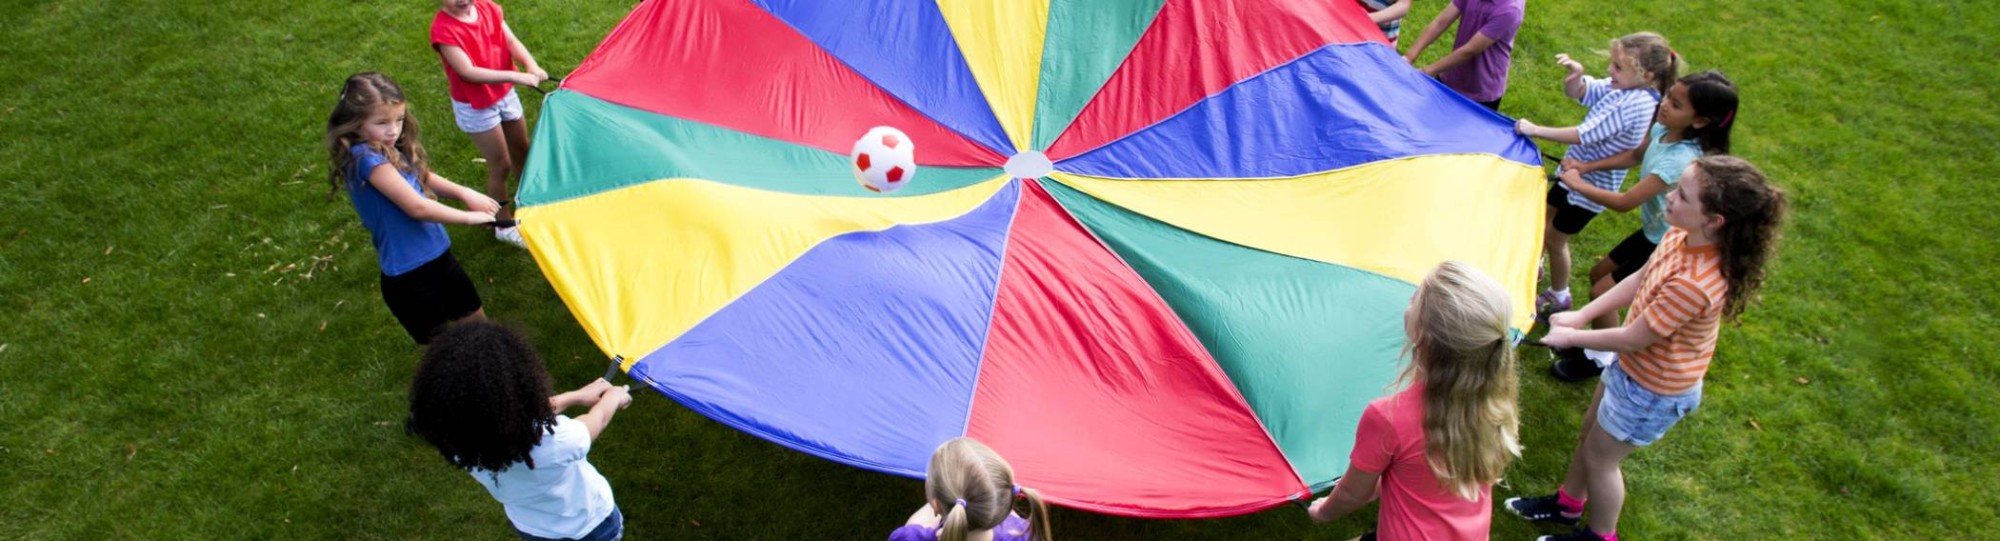 spelen een spel met een kleurrijke parachute